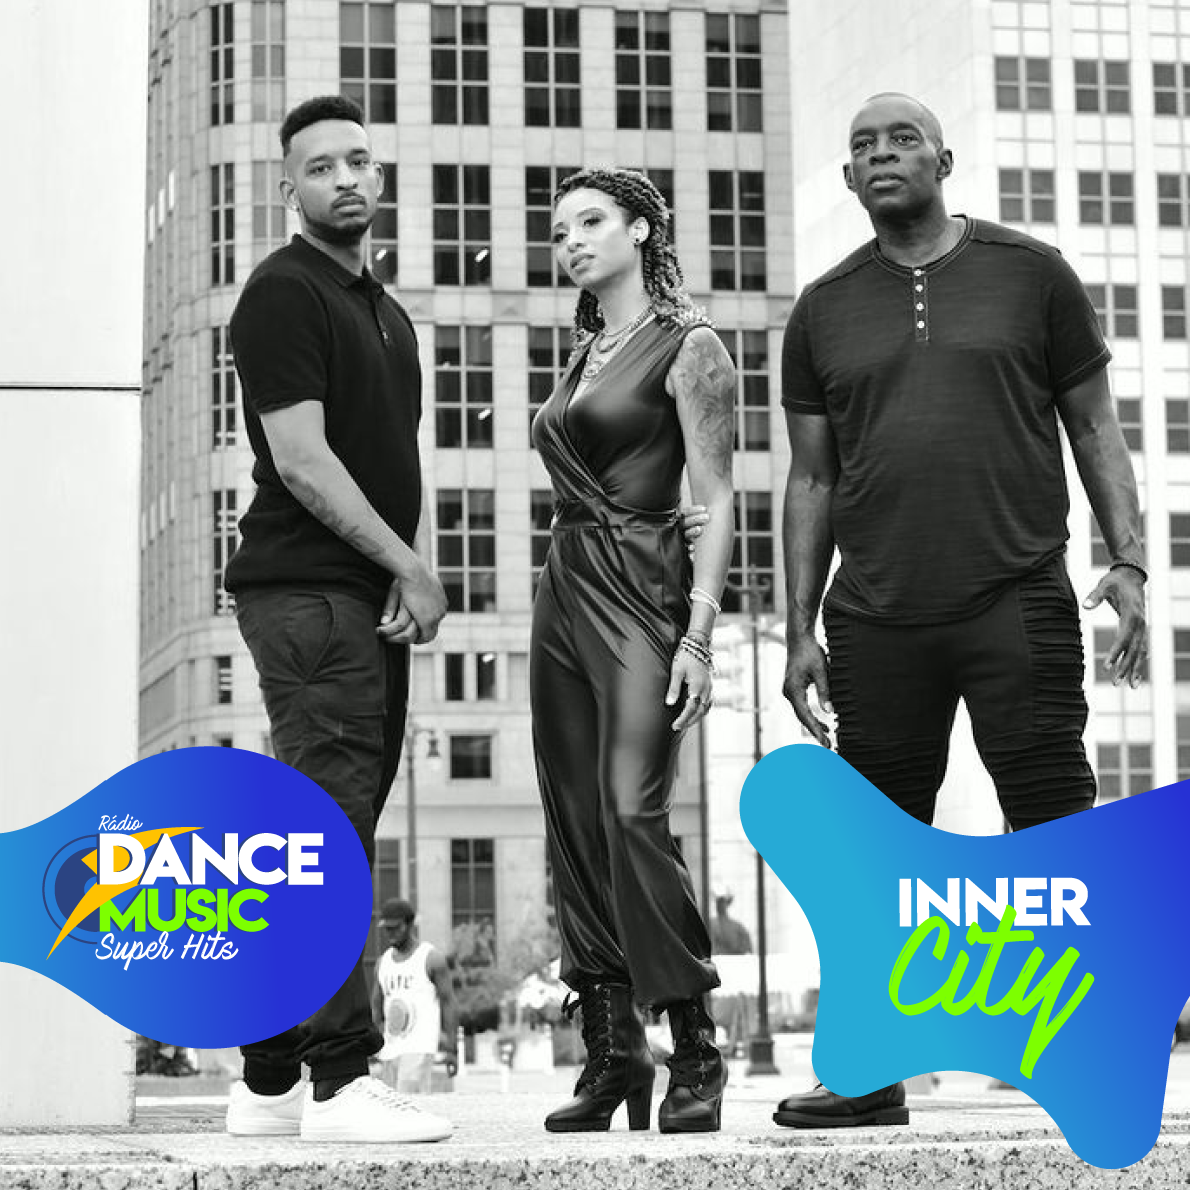 Rádio Dance Music Super Hits - A Rádio que é Autoridade em Dance Music no  Brasil!